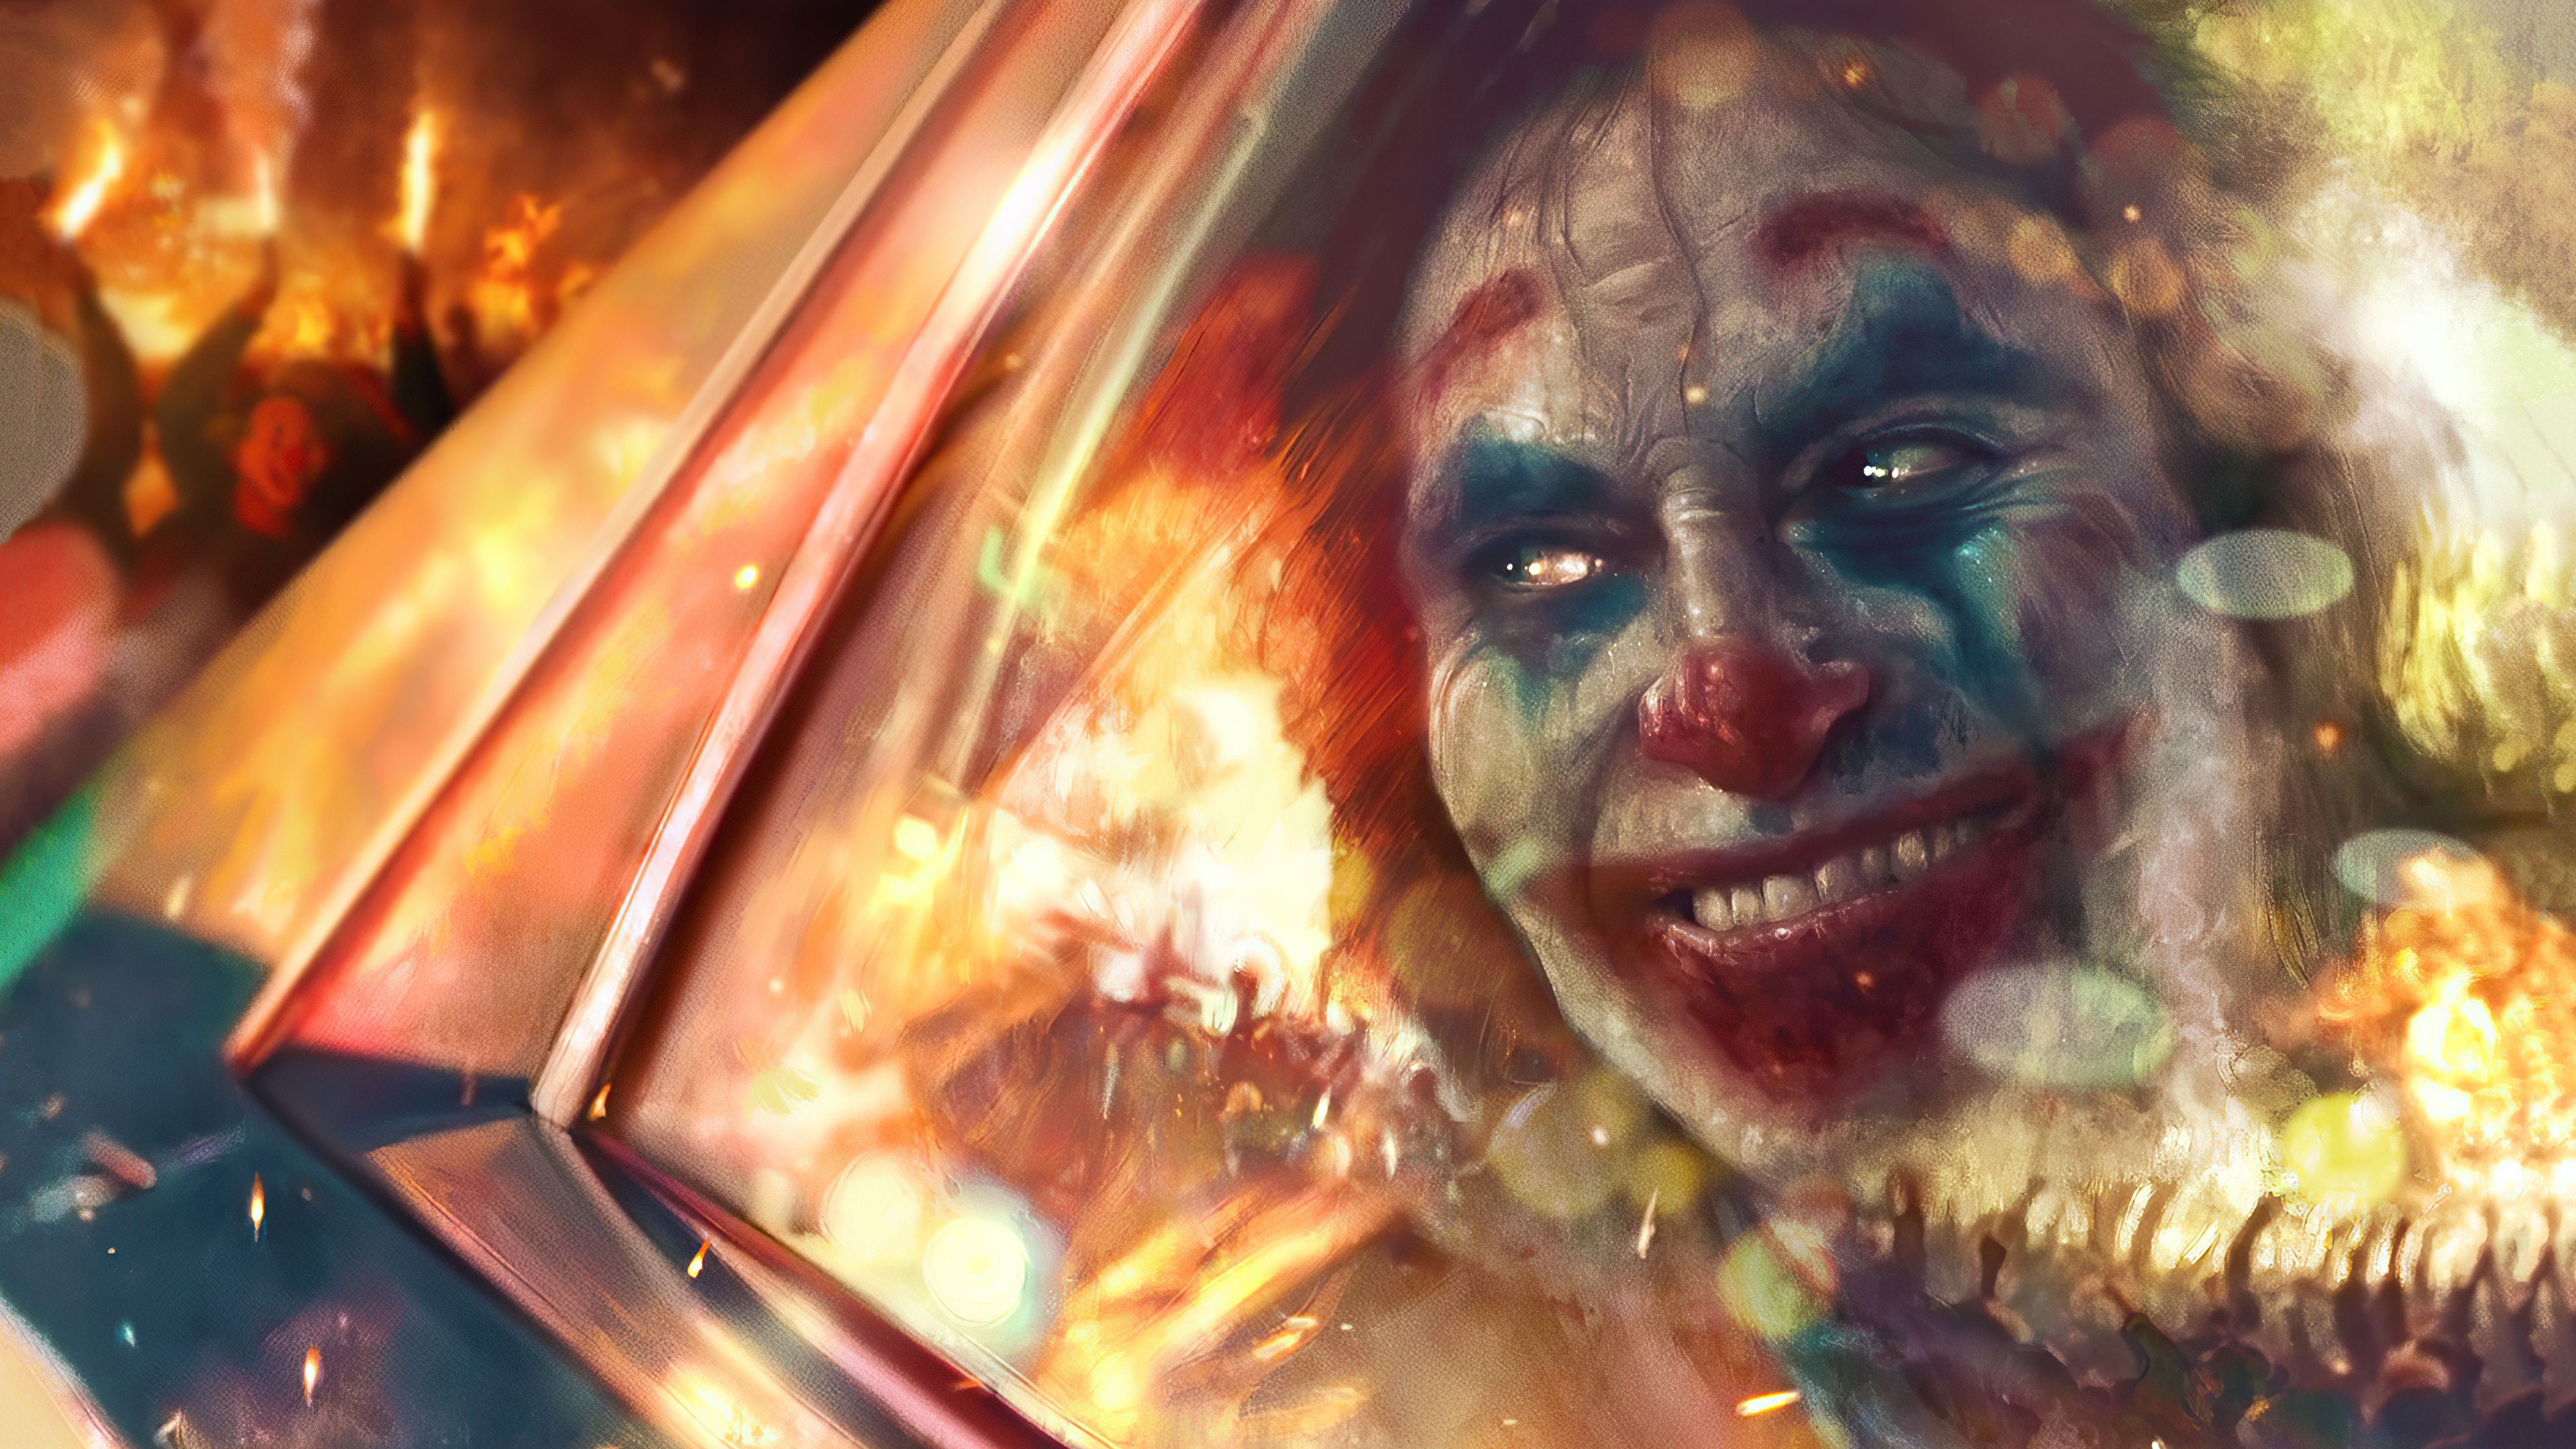 Wallpaper Joker with city in fire